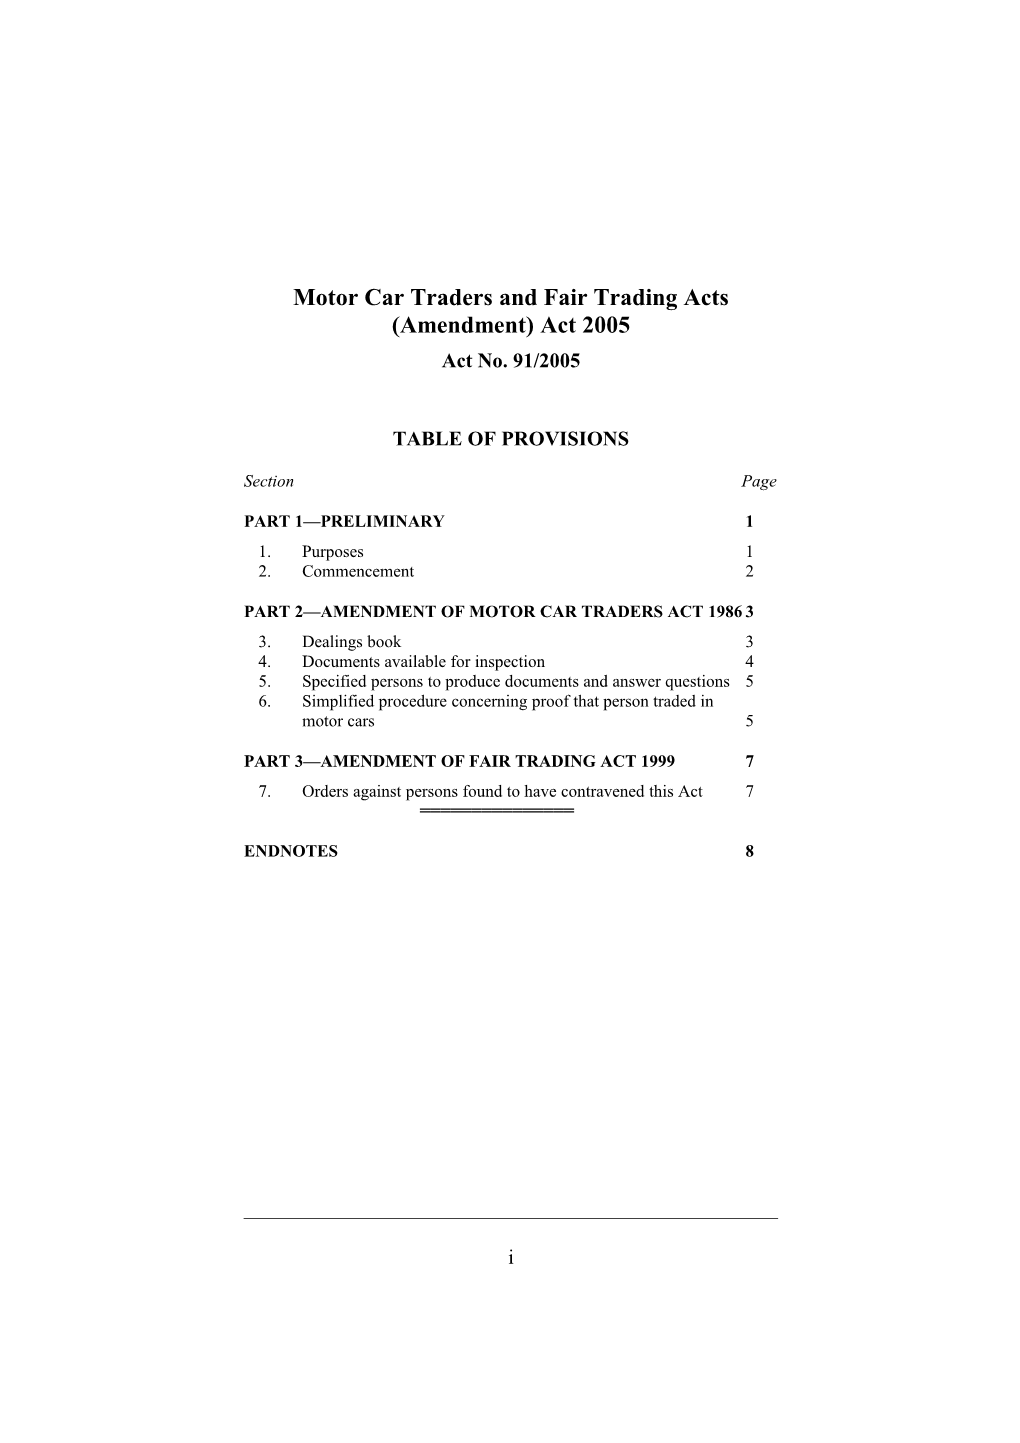 Motor Car Traders and Fair Trading Acts (Amendment) Act 2005